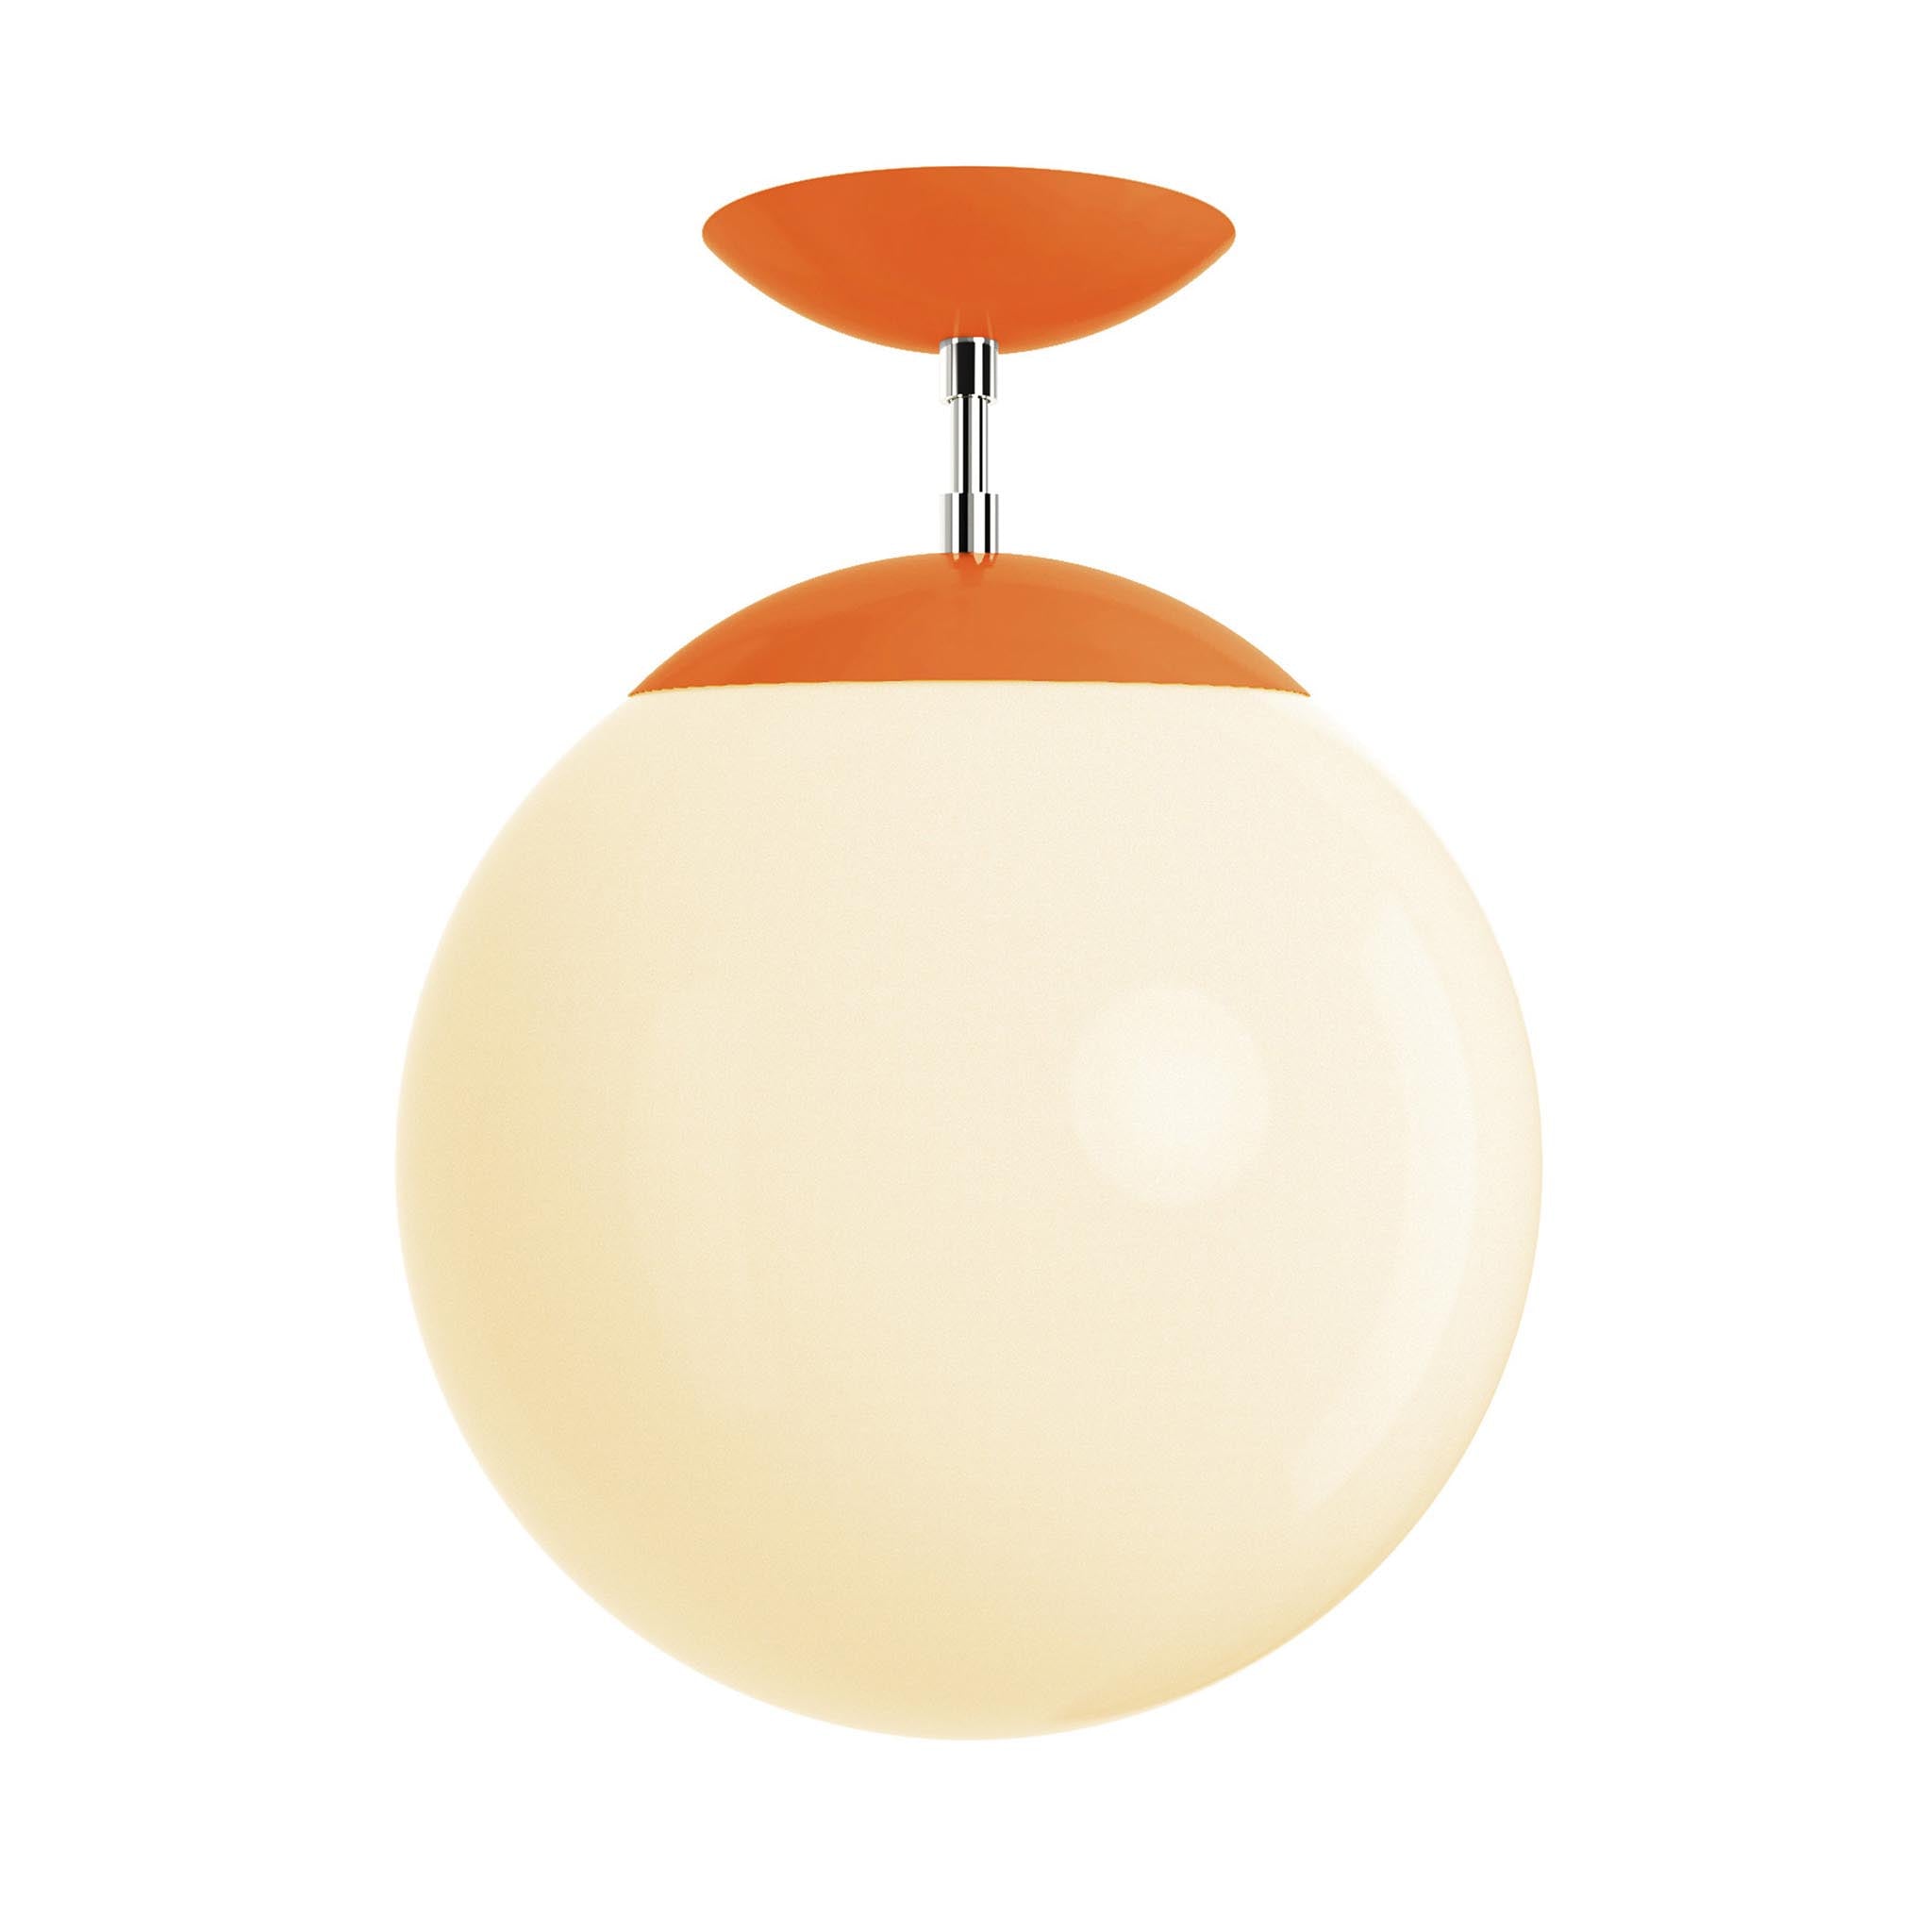 Polished nickel and orange cap white globe flush mount 12" dutton brown lighting